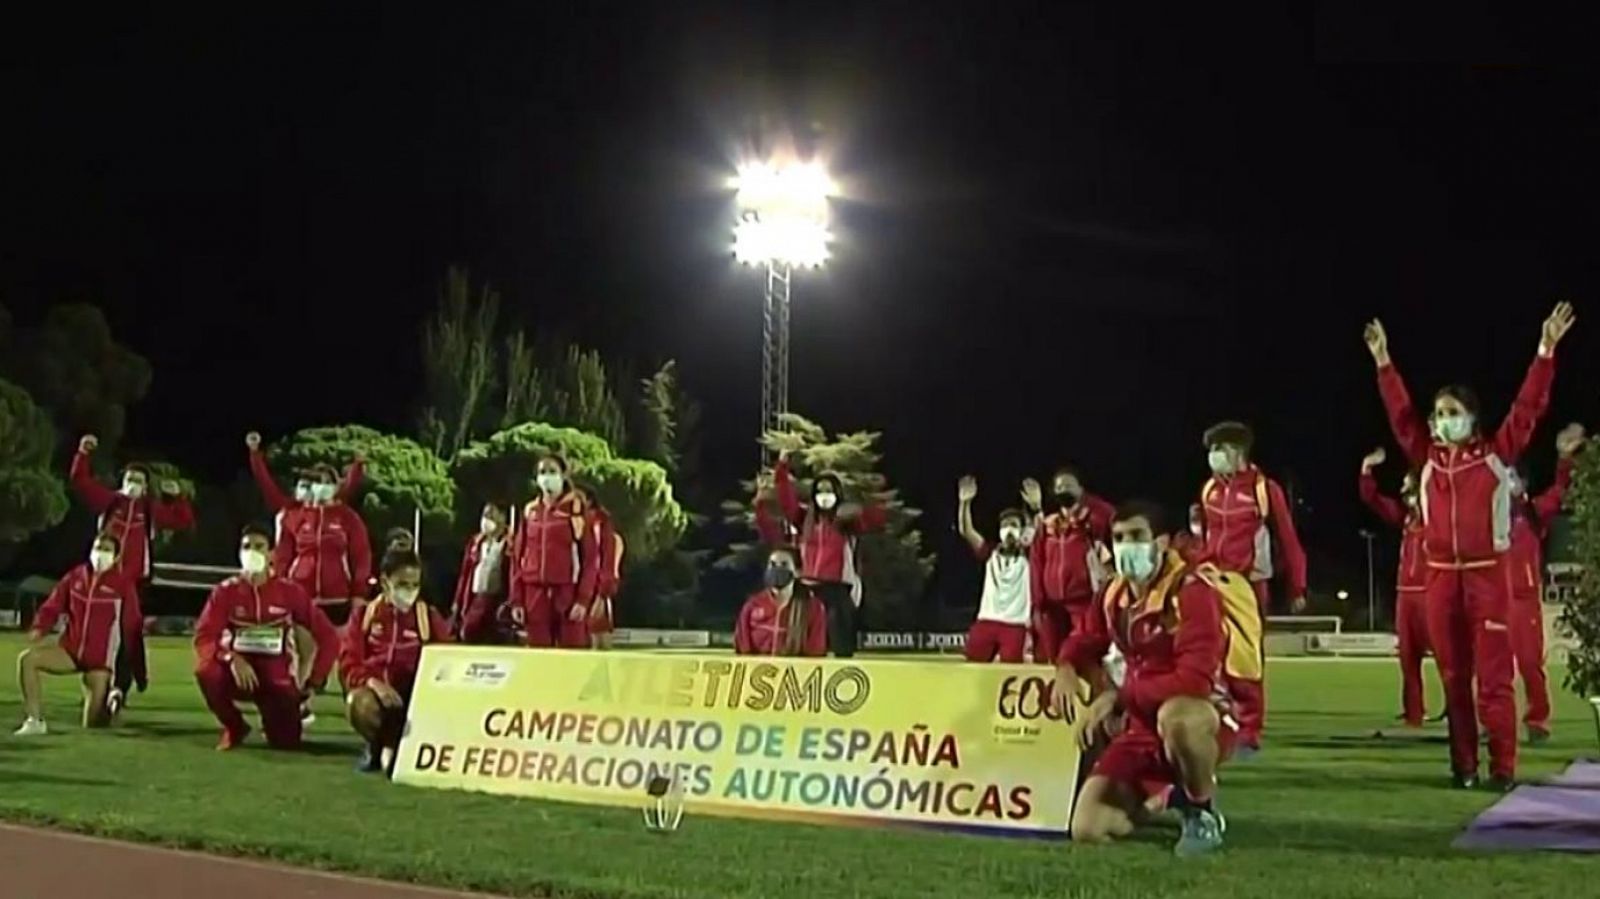 Atletismo - Campeonato de España Federaciones autonómicas - RTVE.es